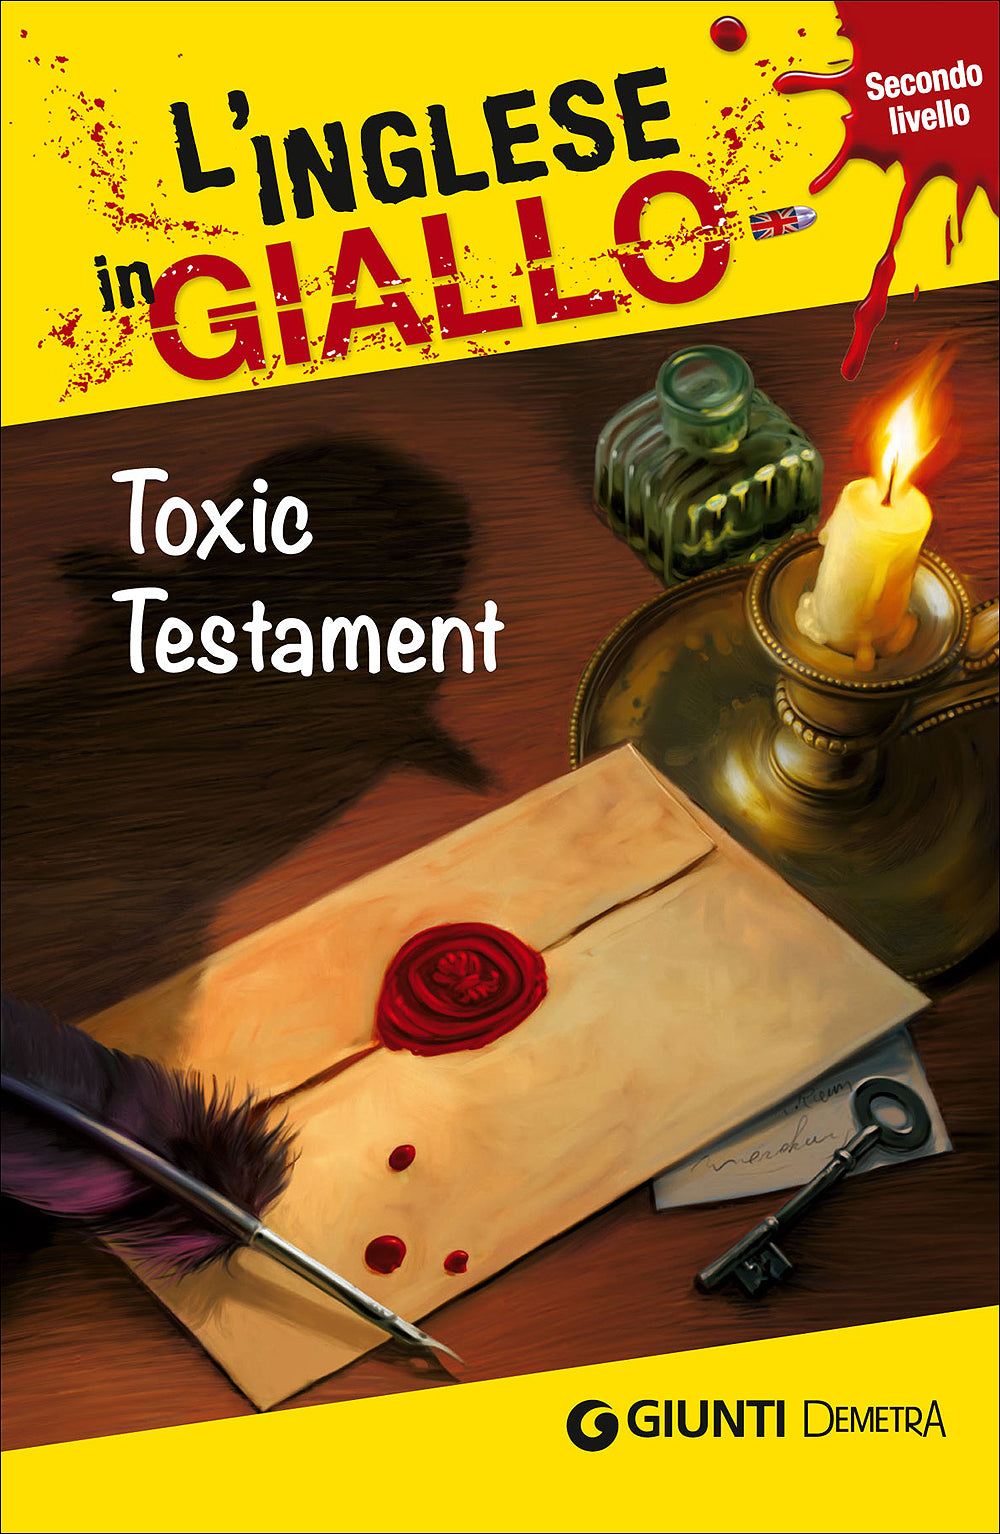 Toxic Testament::I racconti che migliorano il tuo inglese - Secondo livello